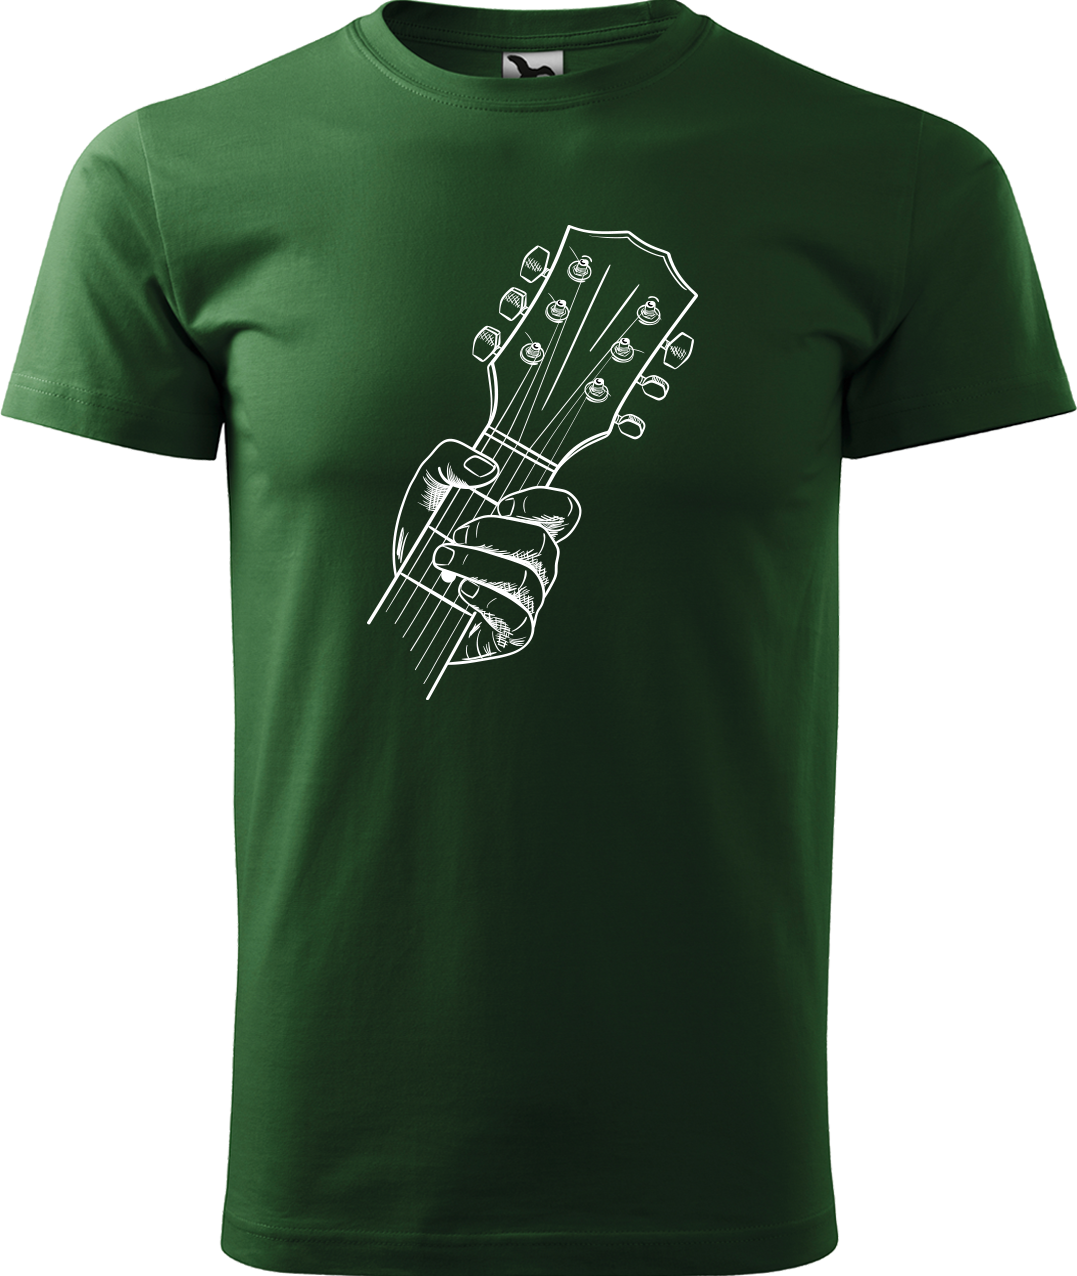 Pánské tričko s kytarou - Hlava kytary Velikost: 4XL, Barva: Lahvově zelená (06)